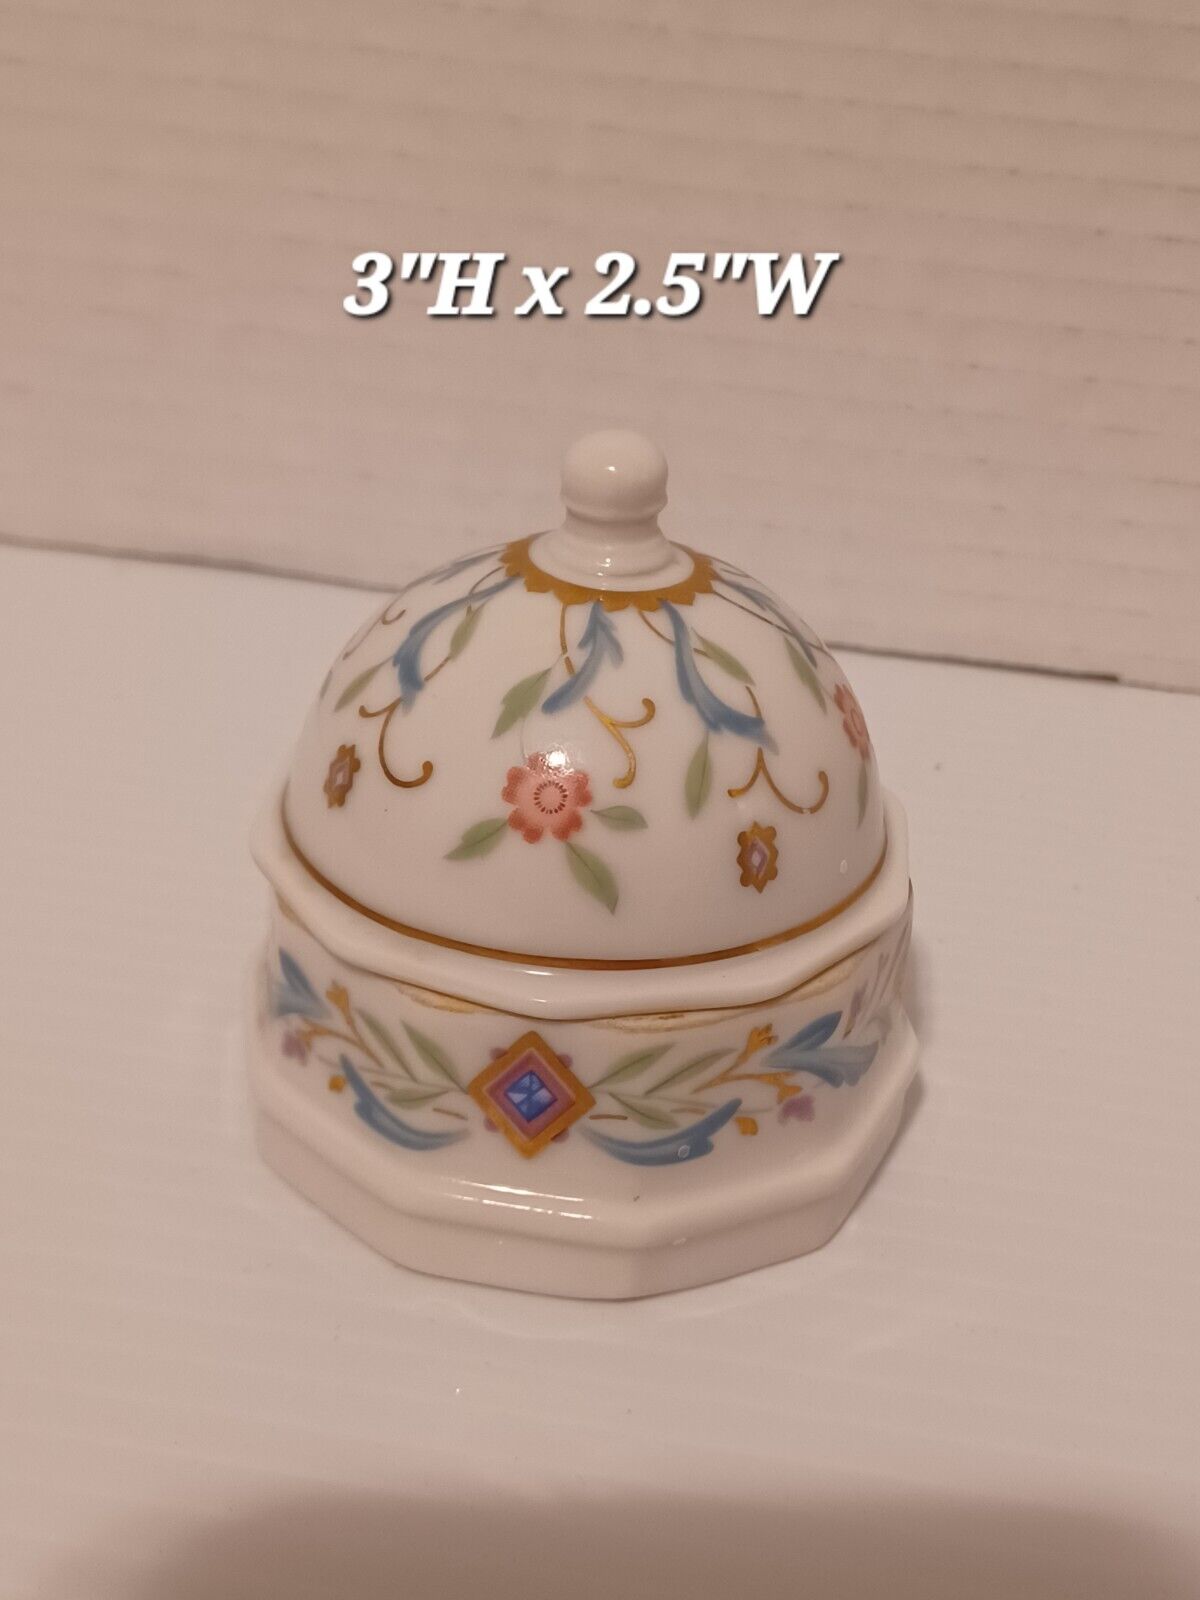 Vintage Prestige Place Lidded Porcelain Trinket Box Made In Japan Floral 